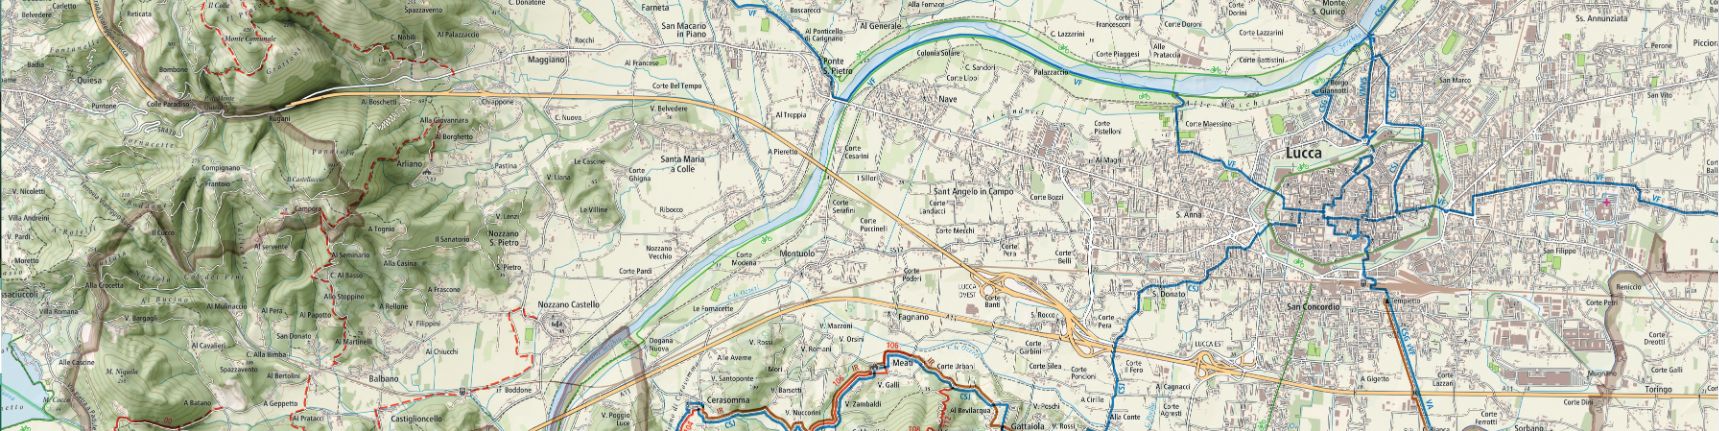 luccatrek - plan de La Via Francigena et la variante sud